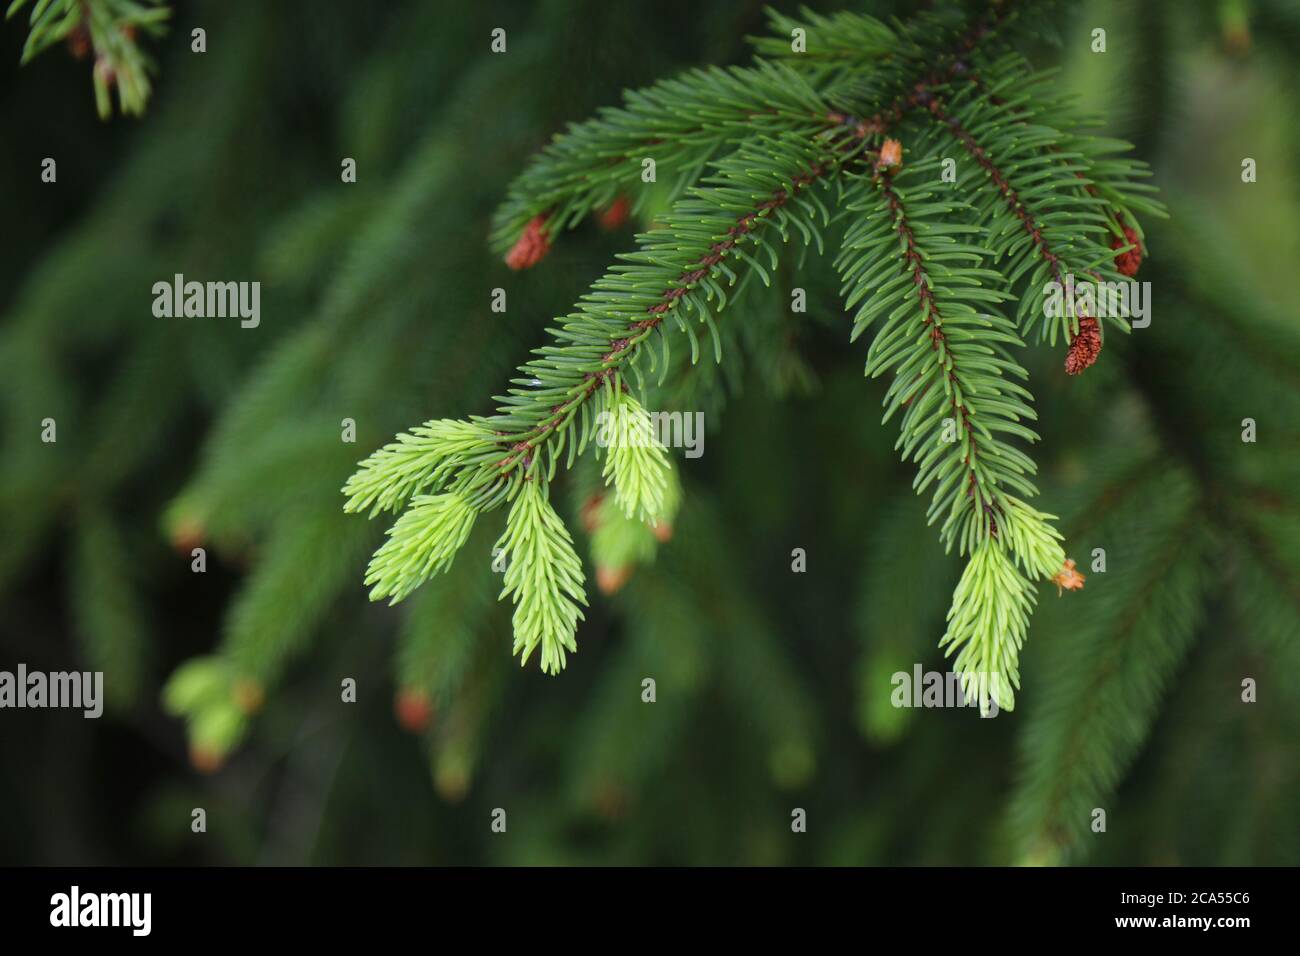 Europäischer Fichtenbaum neues Wachstum (hellgrün). Picea abies Baum. Stockfoto